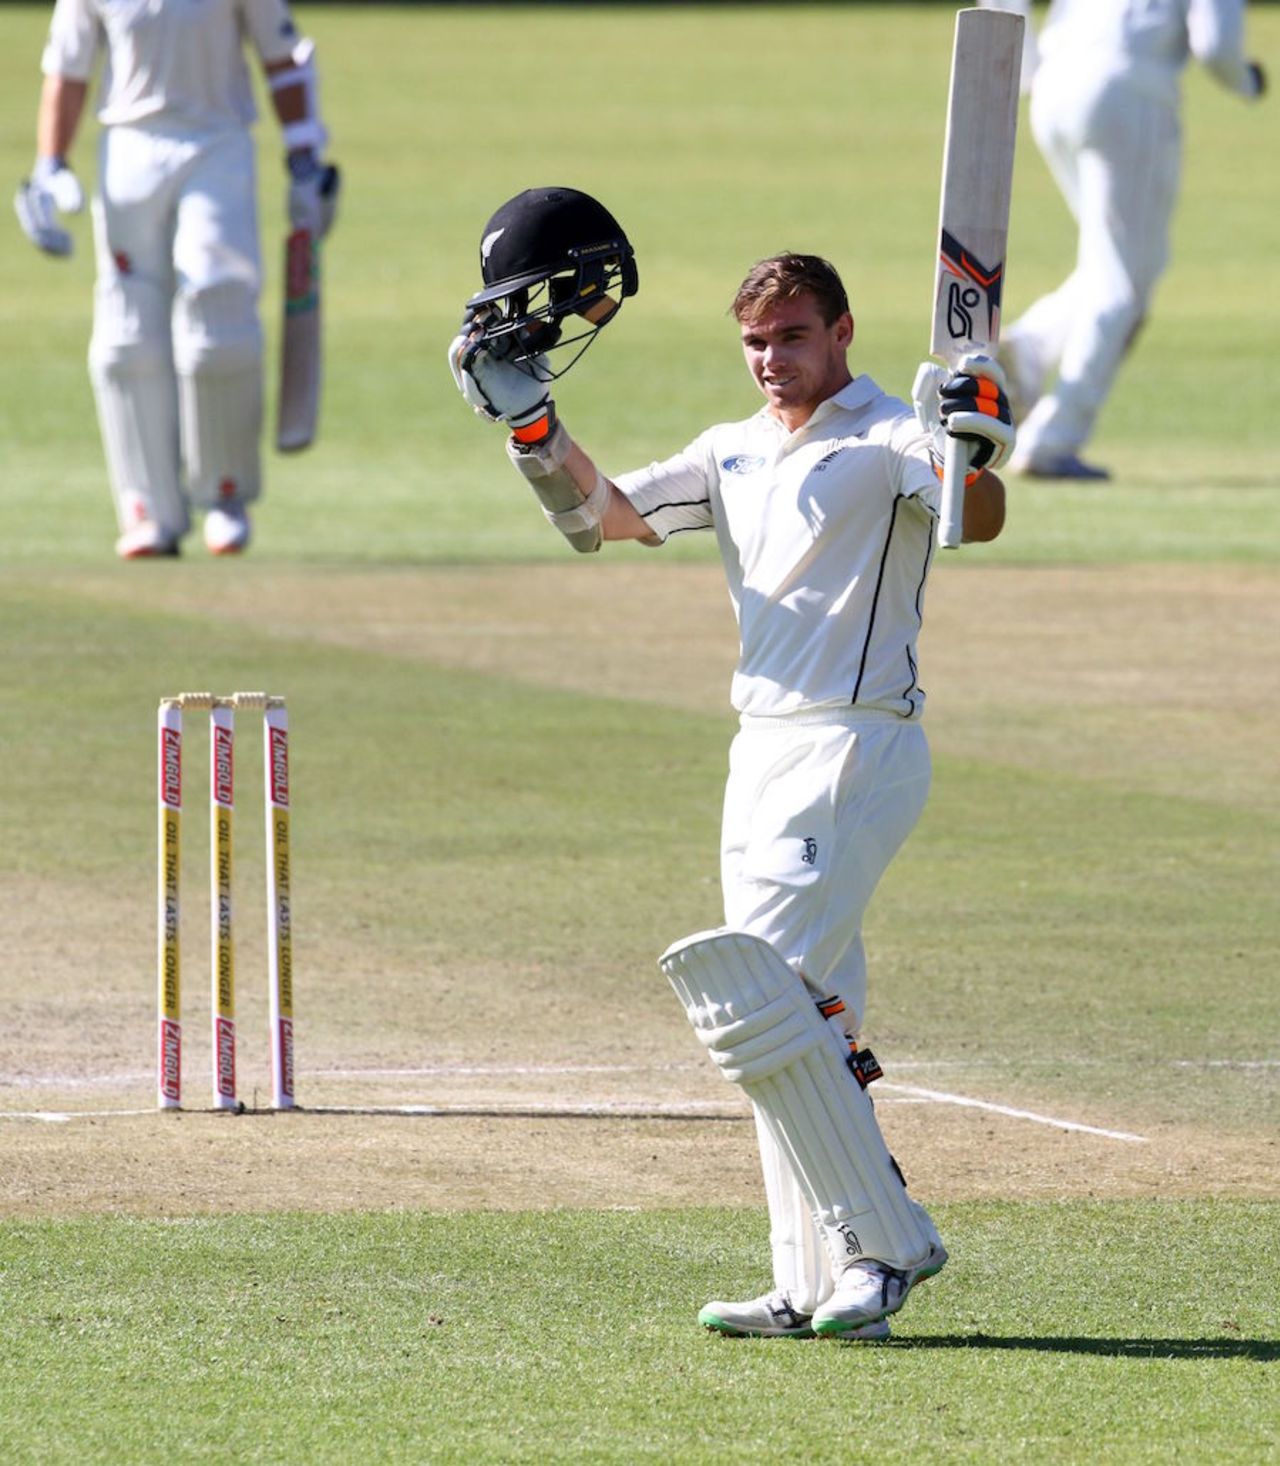 Tom Latham celebrates his fourth Test hundred, Zimbabwe v New Zealand, 1st Test, Bulawayo, 2nd day, July 29, 2016